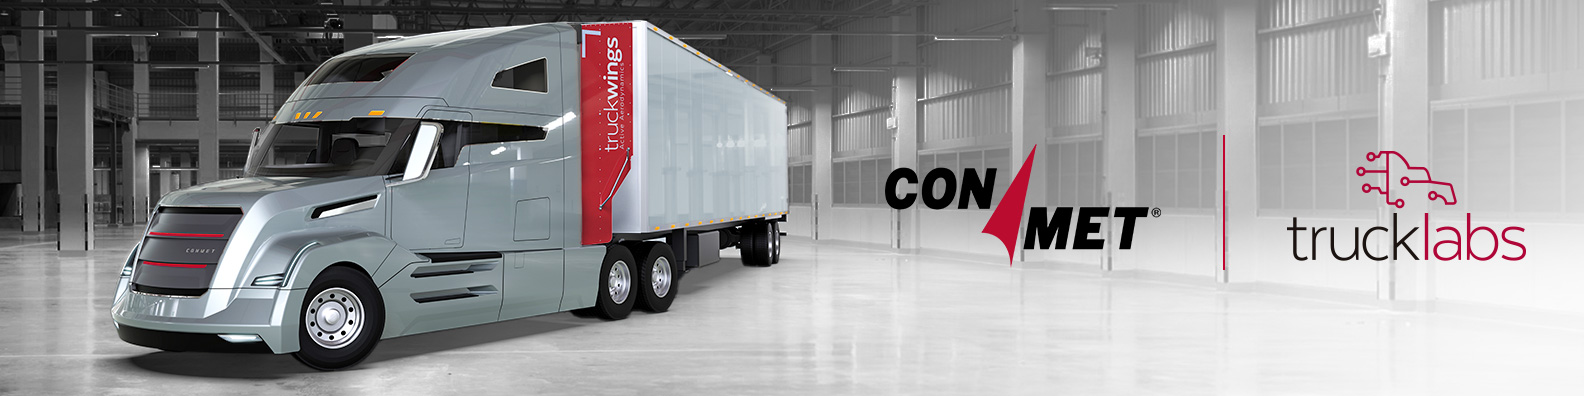 Annonce de l'acquisition de ConMet Trucklabs montrant le camion ConMet avec le logo TruckWings